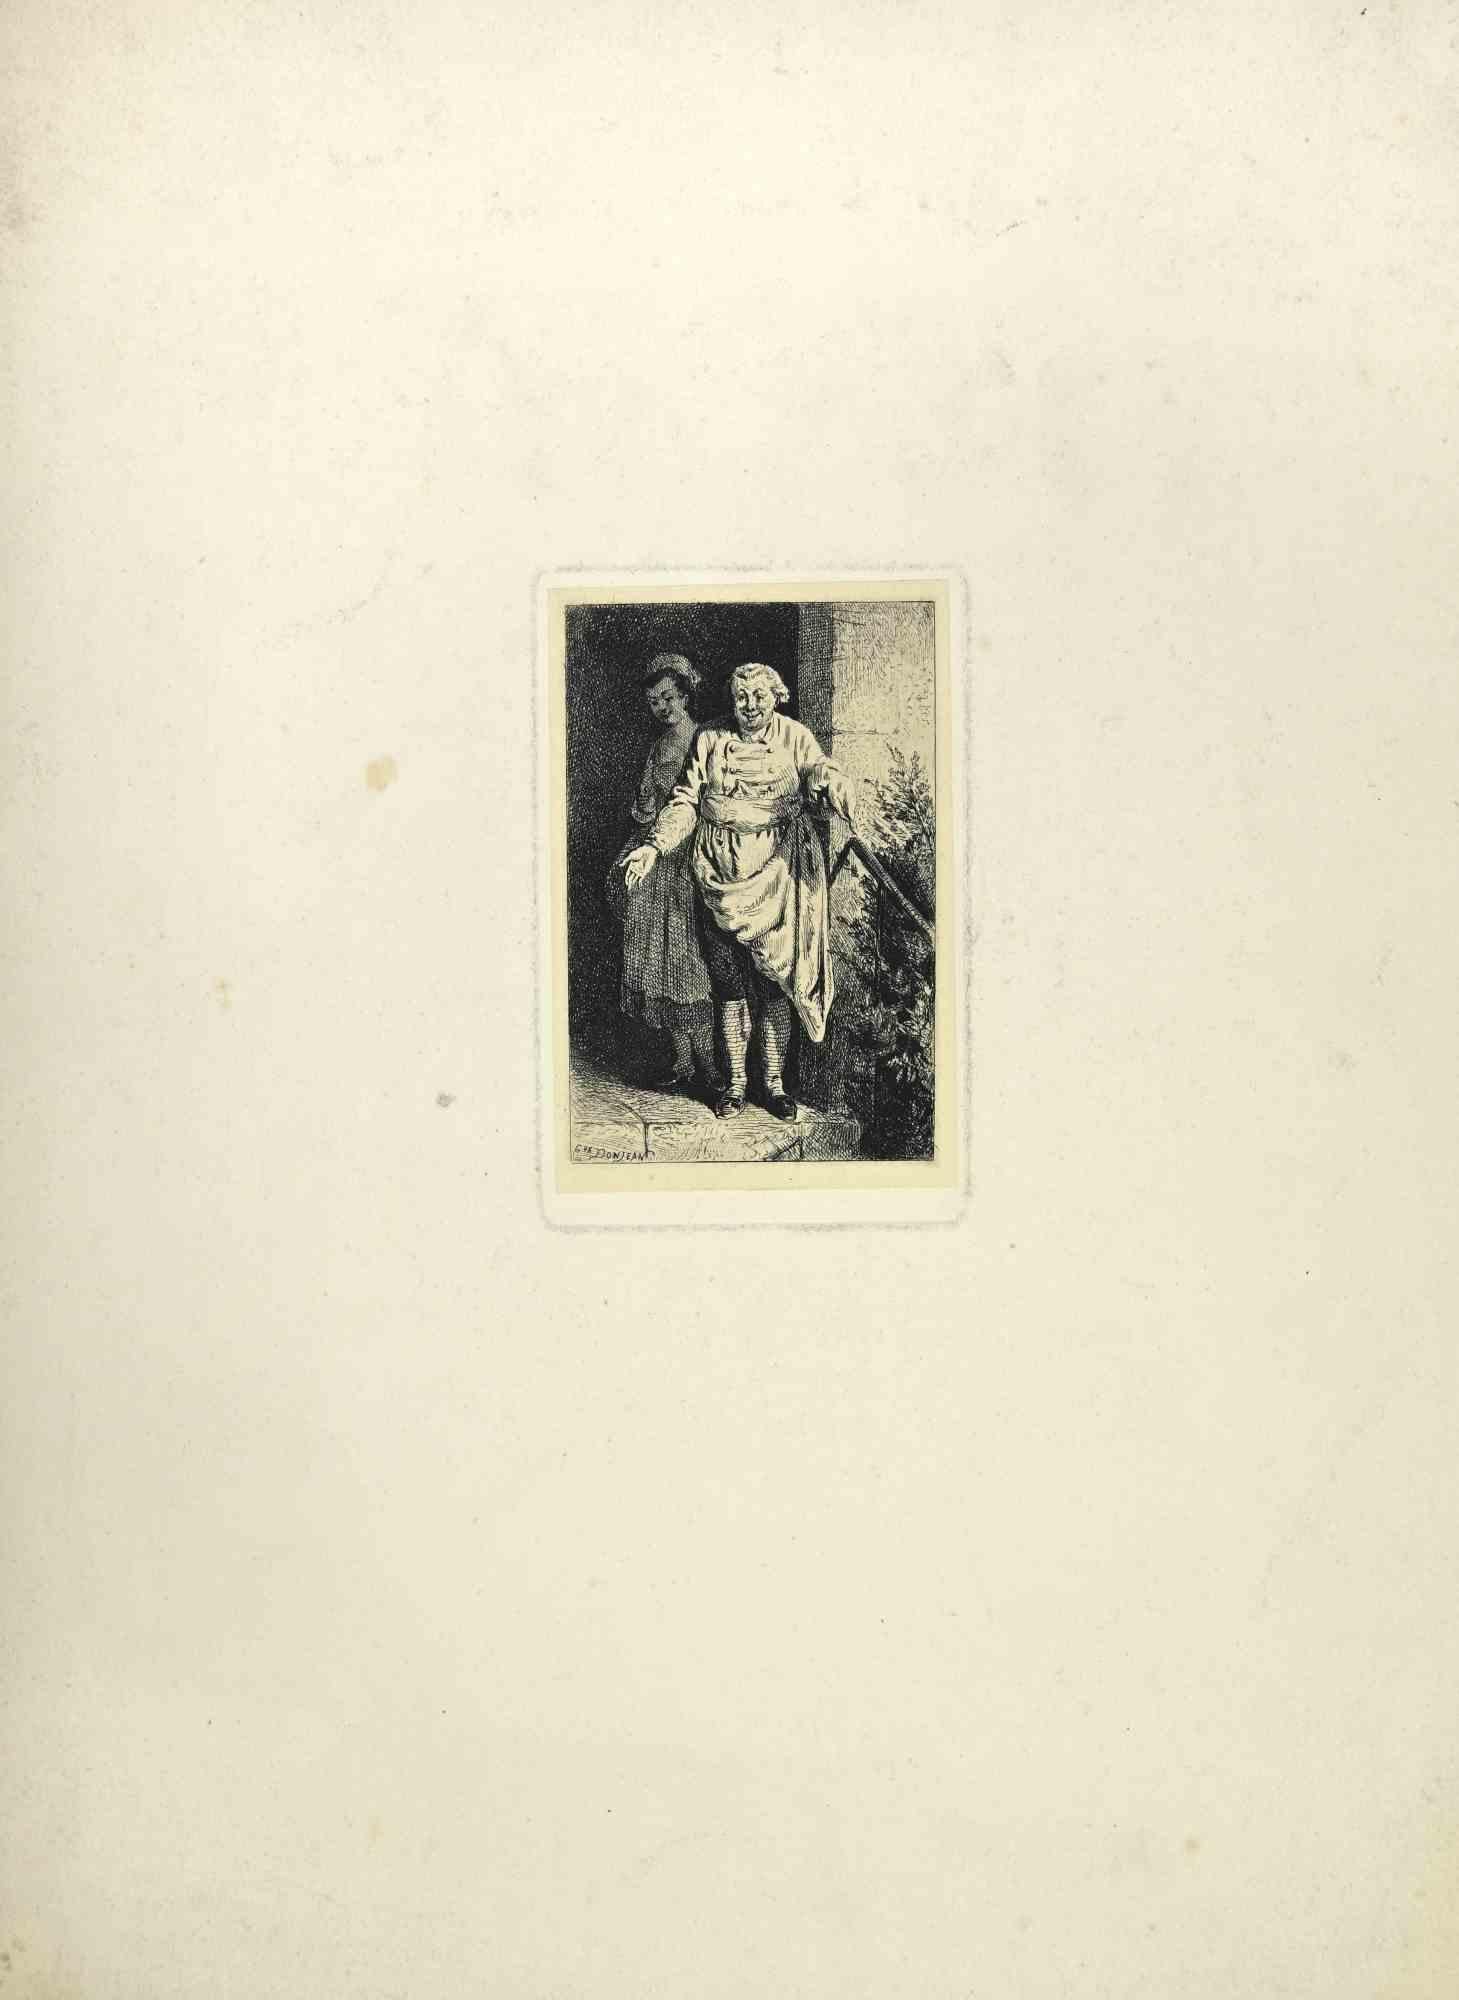 The Costumed Characters ist eine Radierung auf Papier des französischen Künstlers Gustave Donjean.

In der Platte am linken Rand signiert.